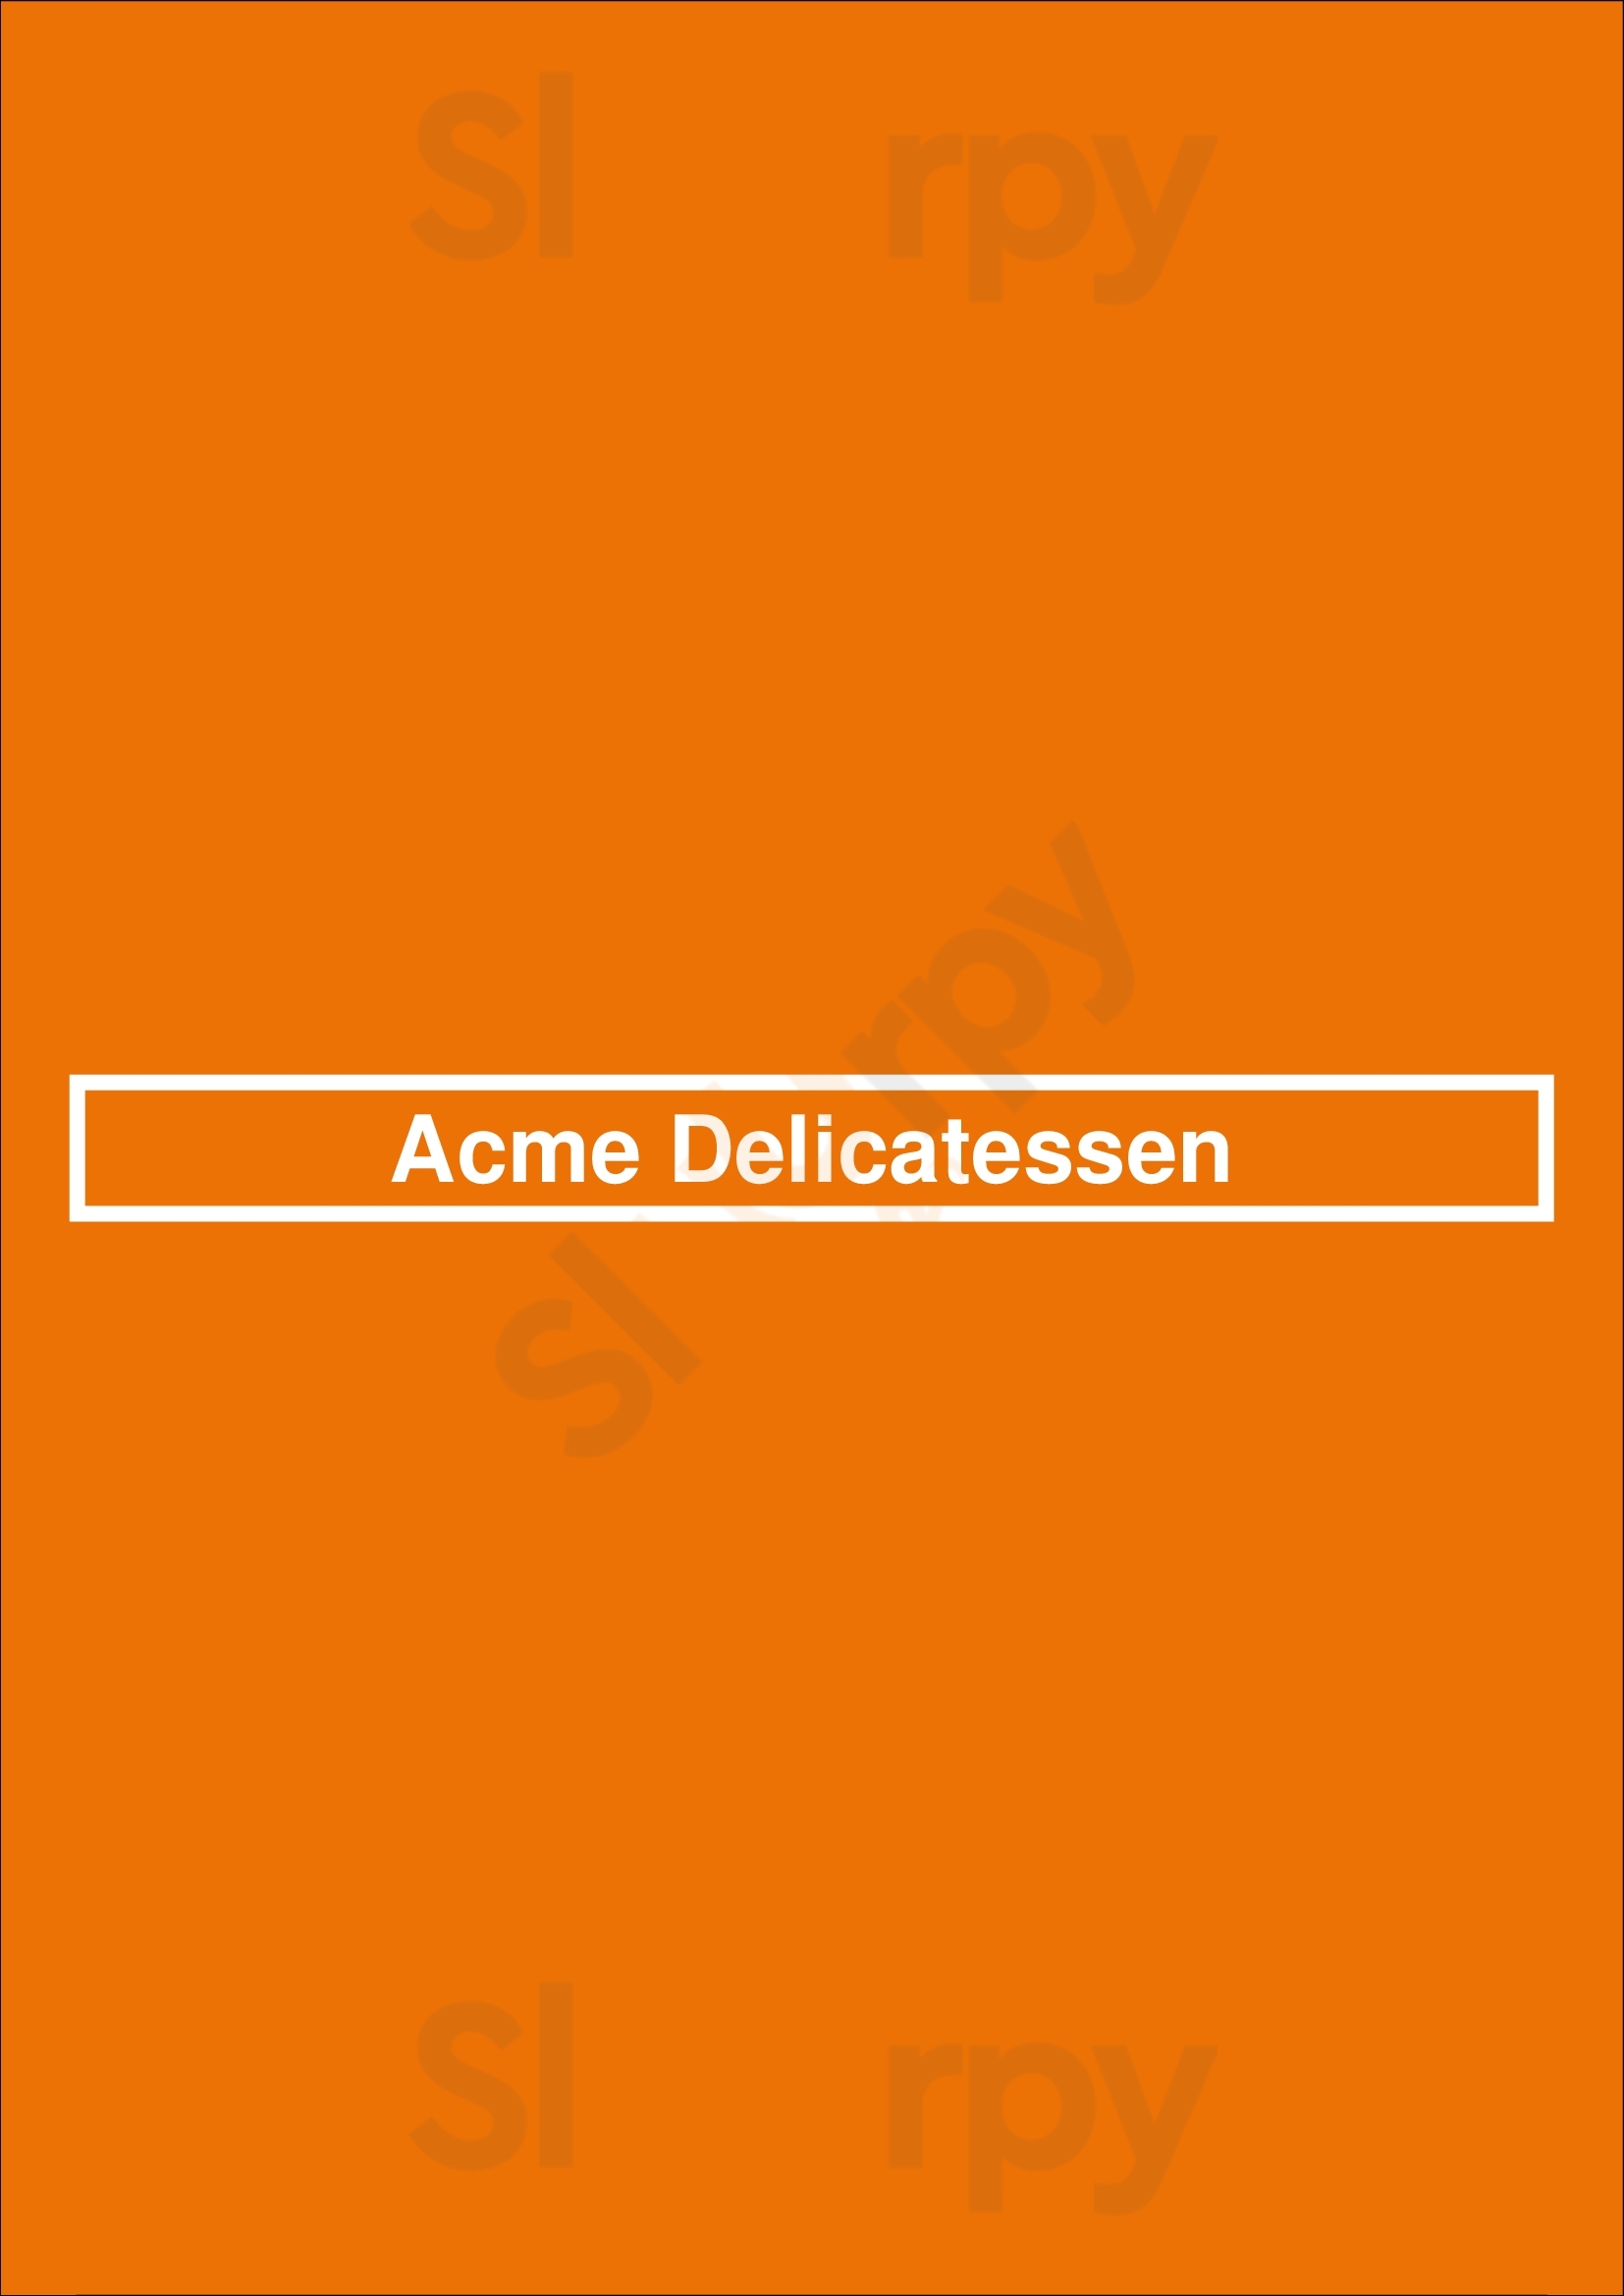 Acme Delicatessen Denver Menu - 1